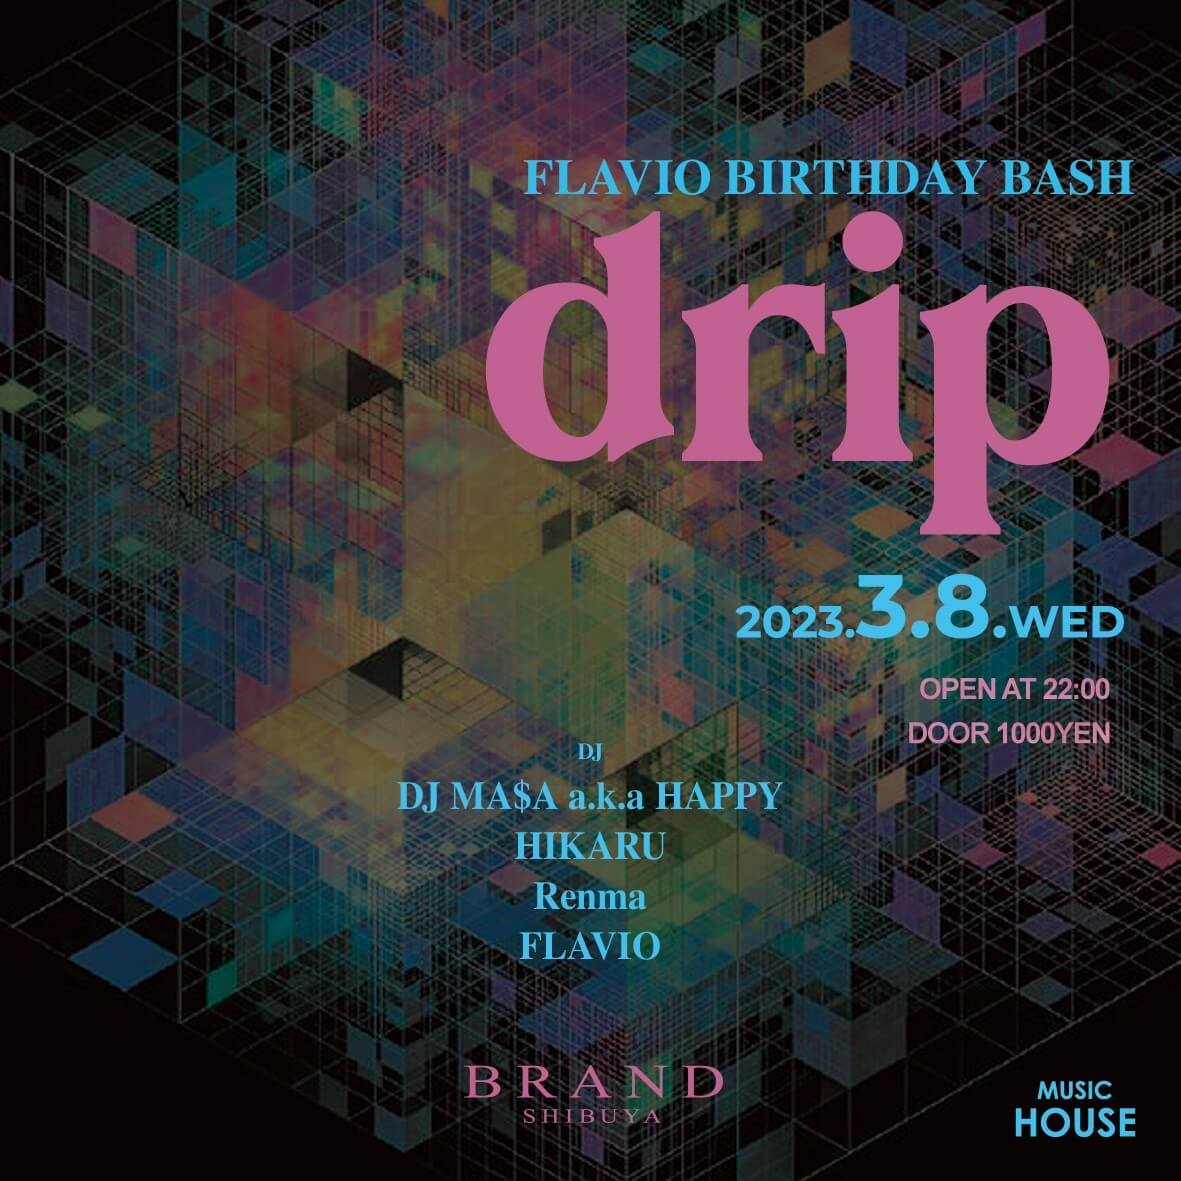 drip 2023年03月08日（水曜日）に渋谷 クラブのBRAND SHIBUYAで開催されるHOUSEイベント